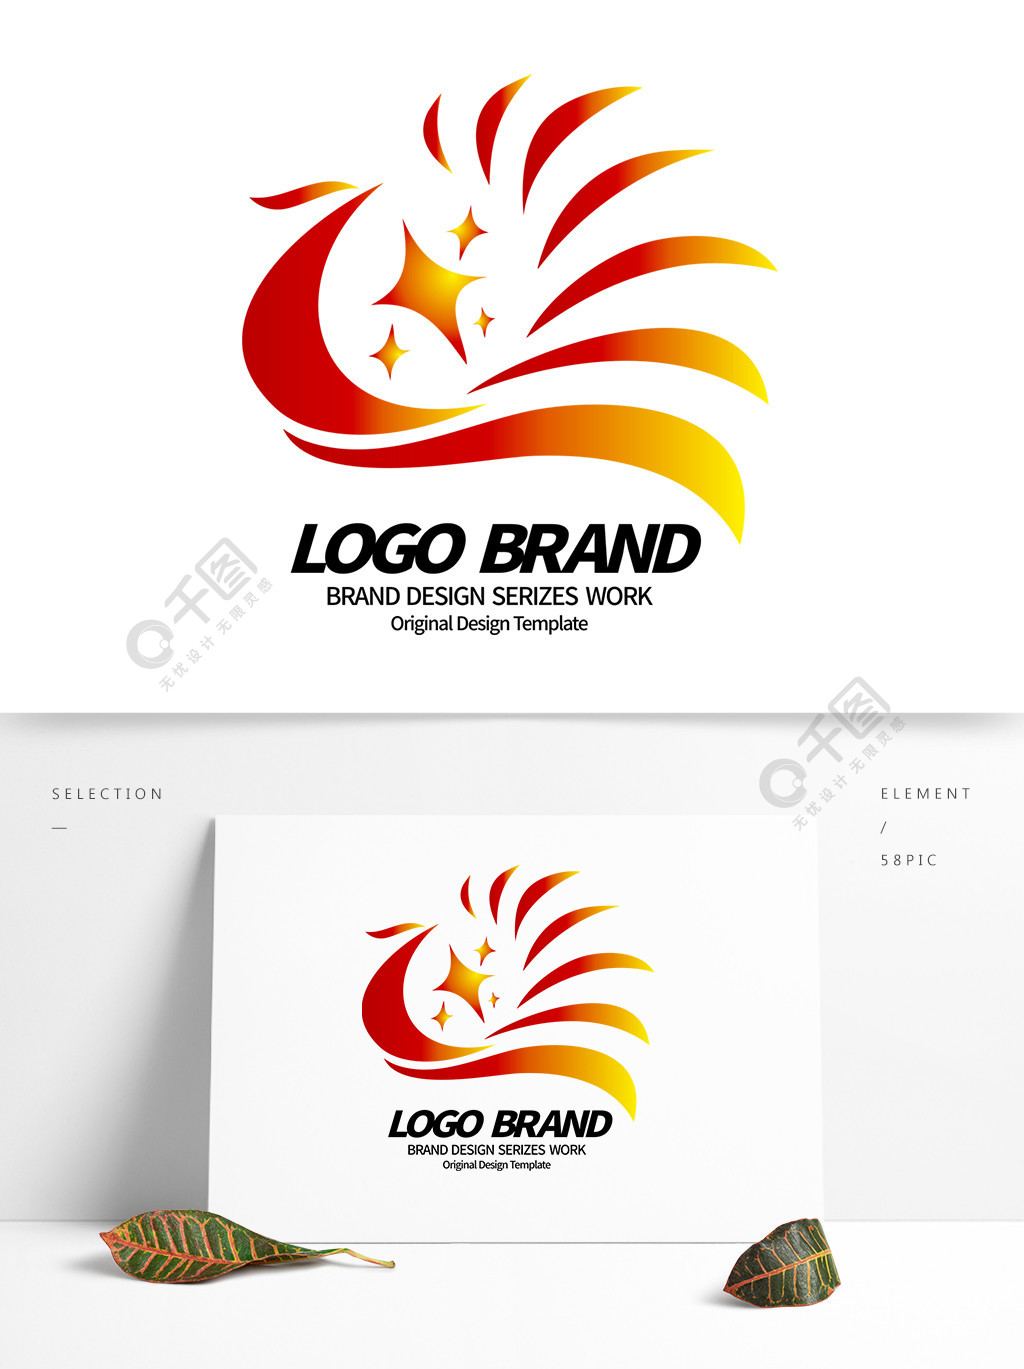 简约大气红黄凤凰彩带公司logo标志设计